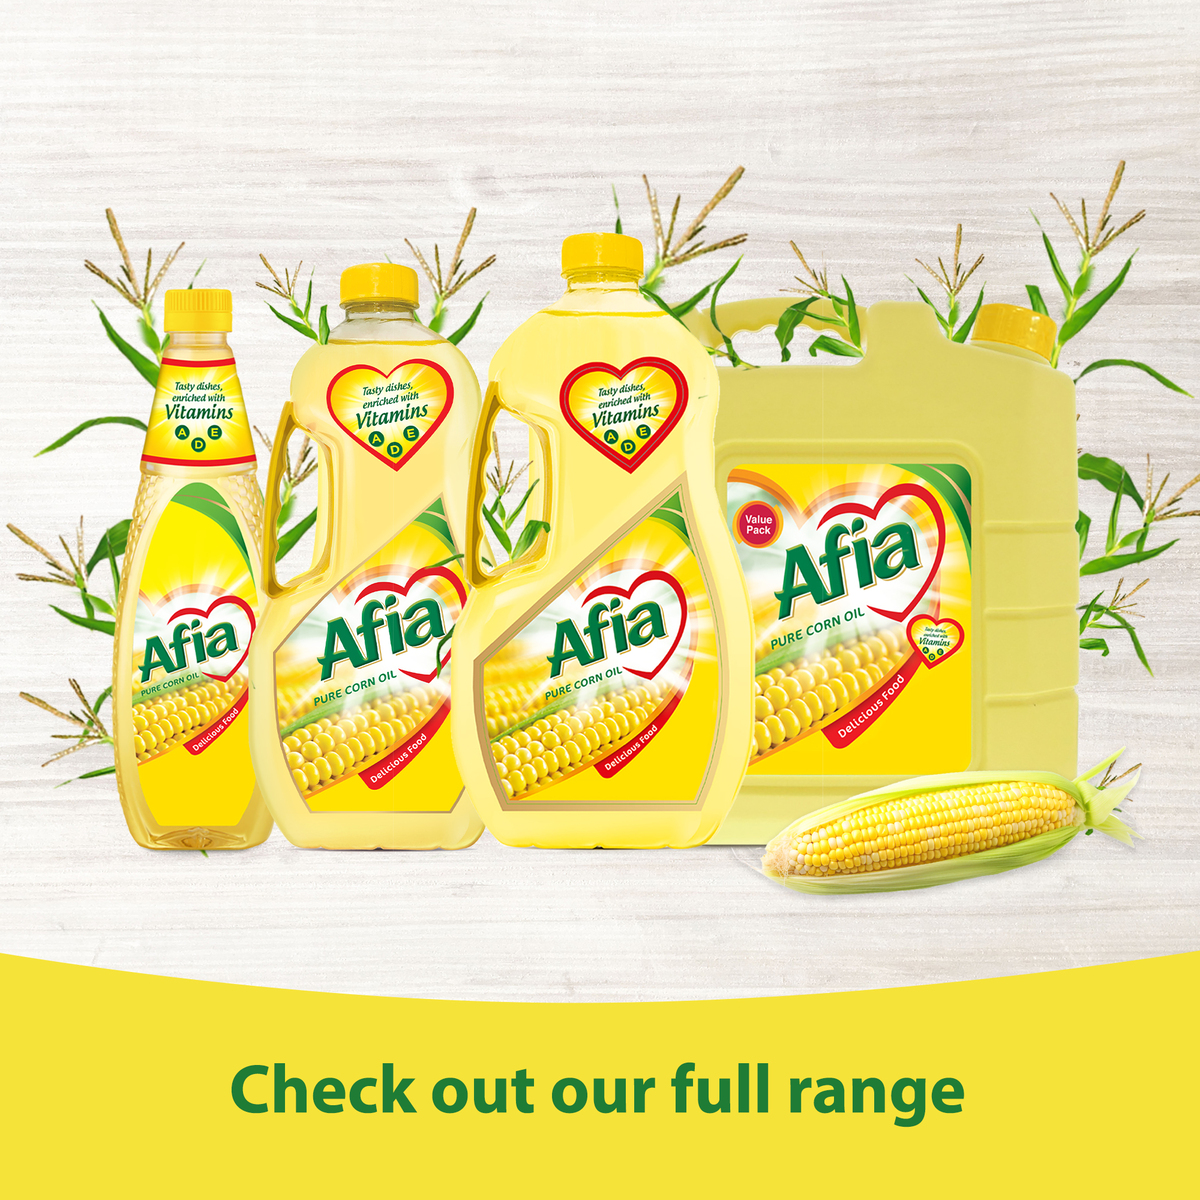 Afia Pure Corn Oil, Enriched with Vitamins A, D & E, Value Pack 9 Litres